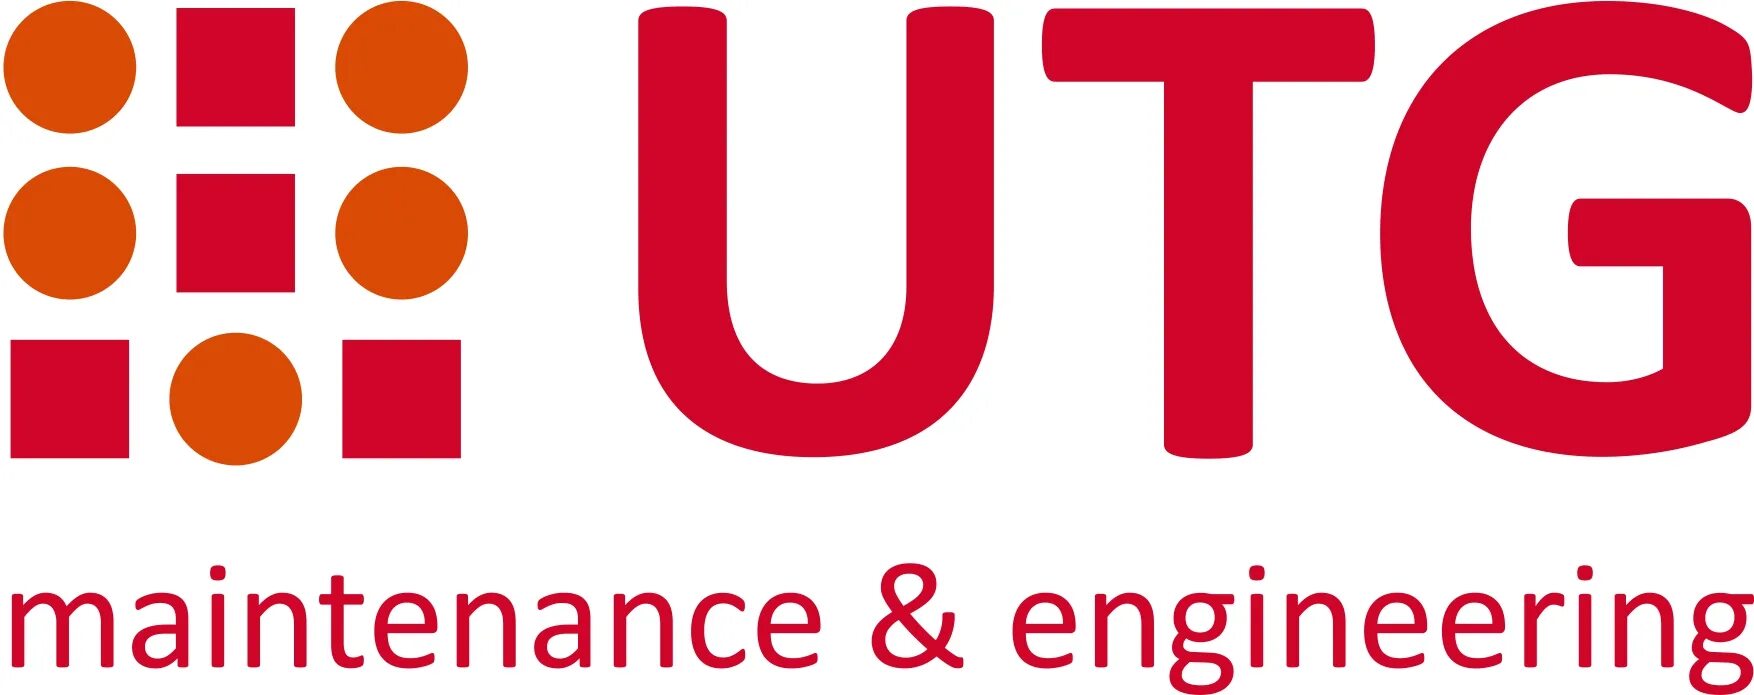 Ооо джей ти. UTG логотип. UTG Aviation services. Ю ти Джи логотип. UTG Внуково.